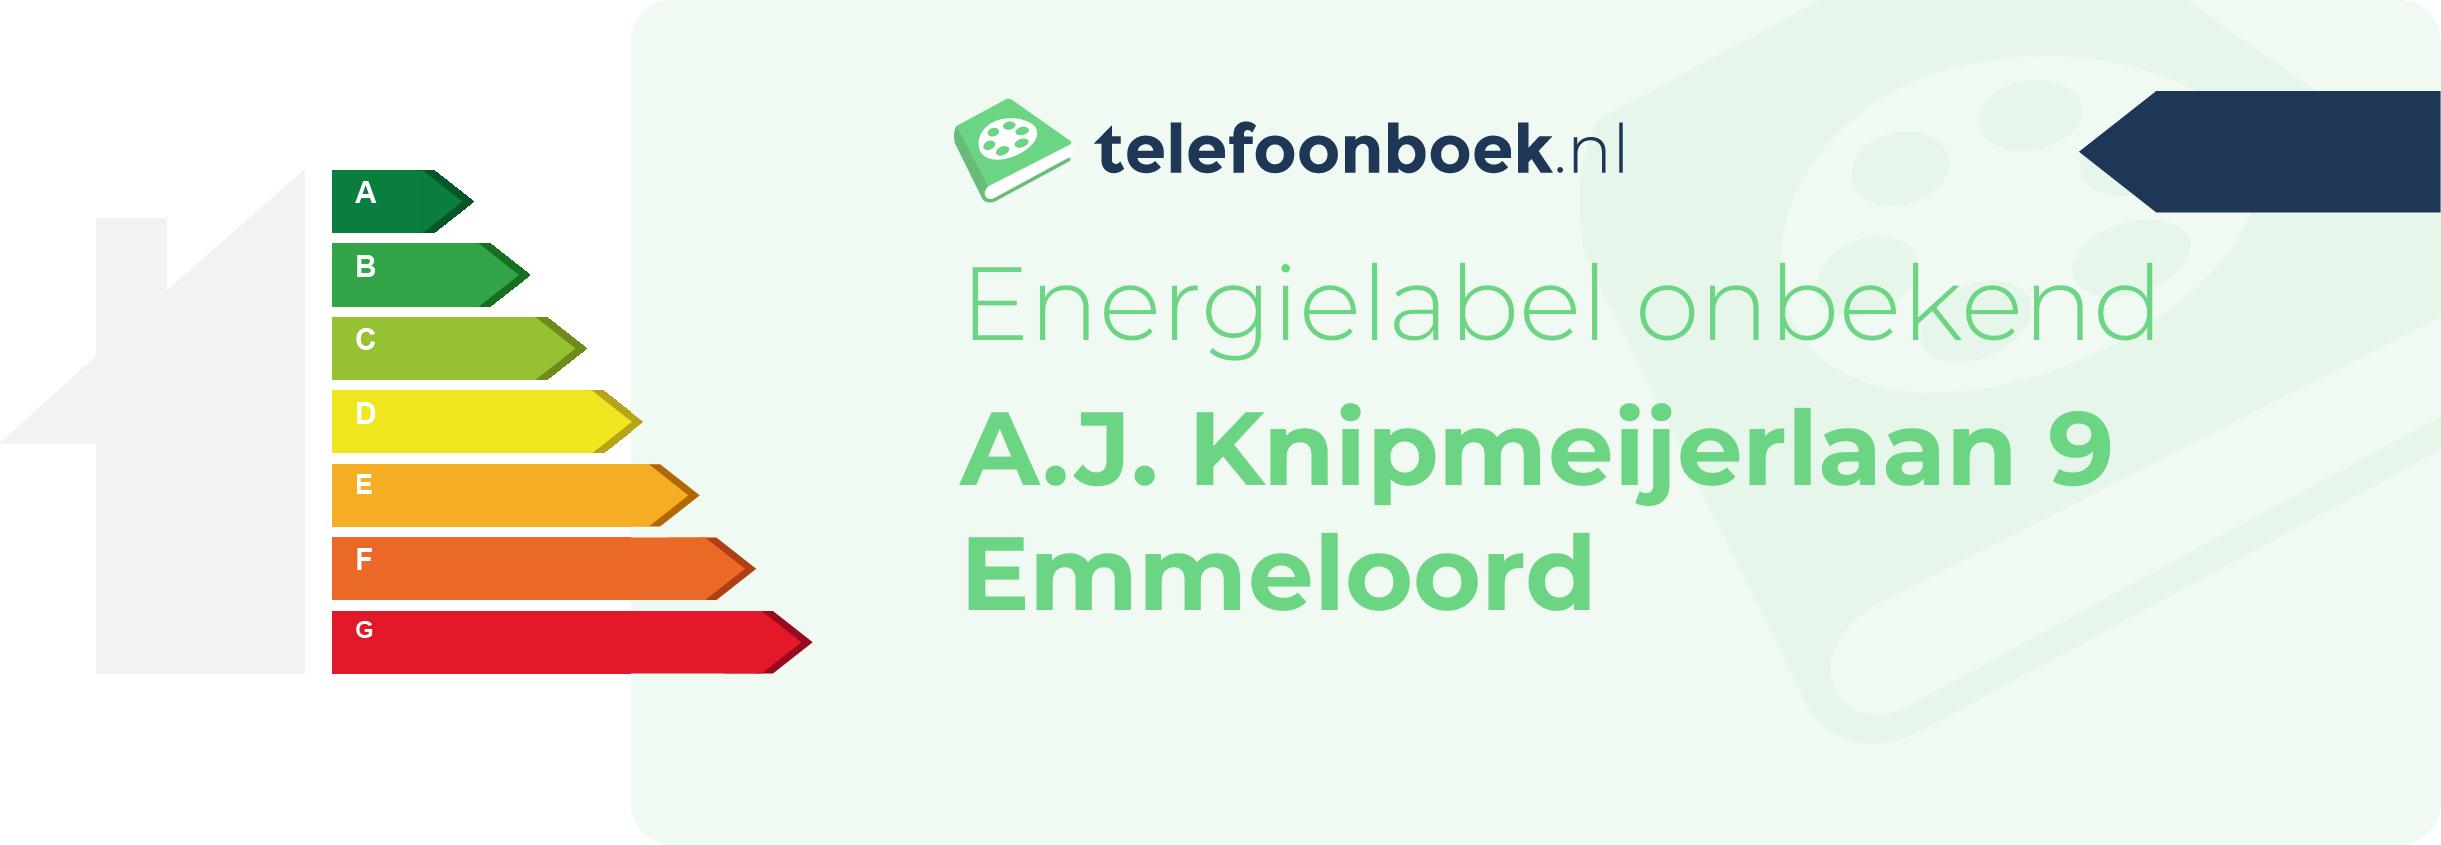 Energielabel A.J. Knipmeijerlaan 9 Emmeloord